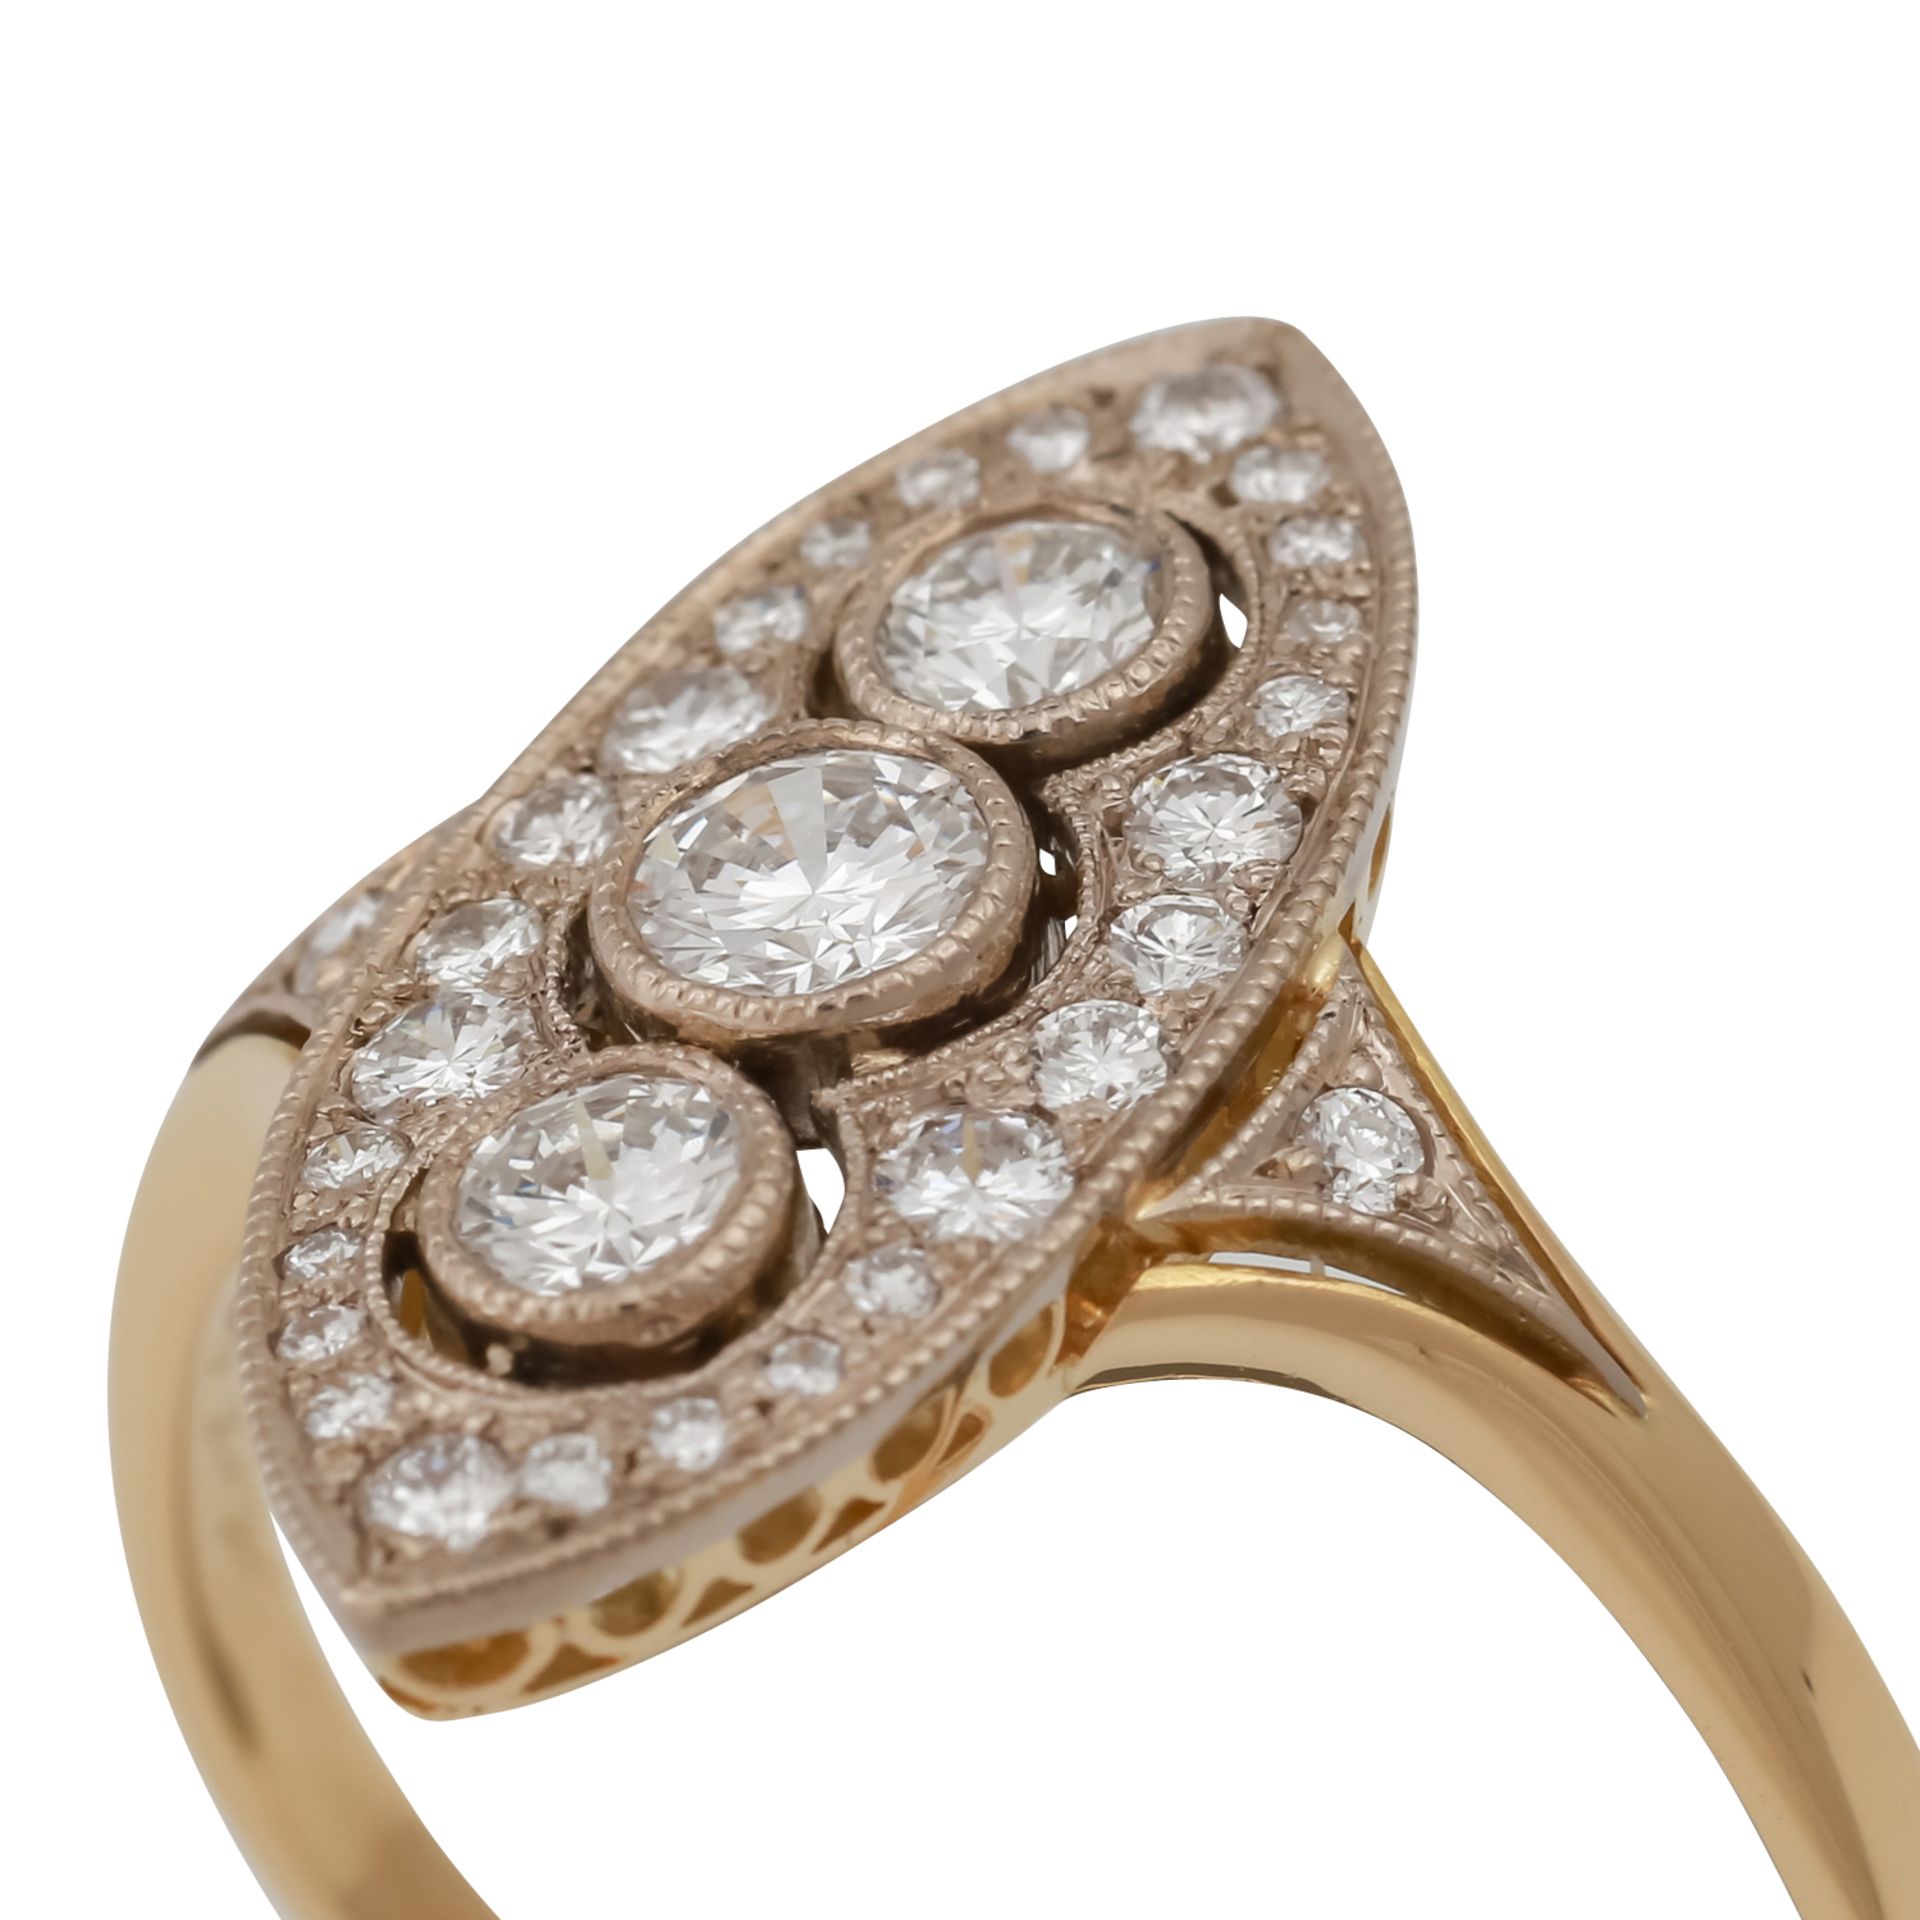 Ring im Stil des Art Déco mit Brillanten, zus. ca. 0,6 ct,gute Farbe und Reinheit, GG/WG 18K, RW: - Bild 5 aus 5